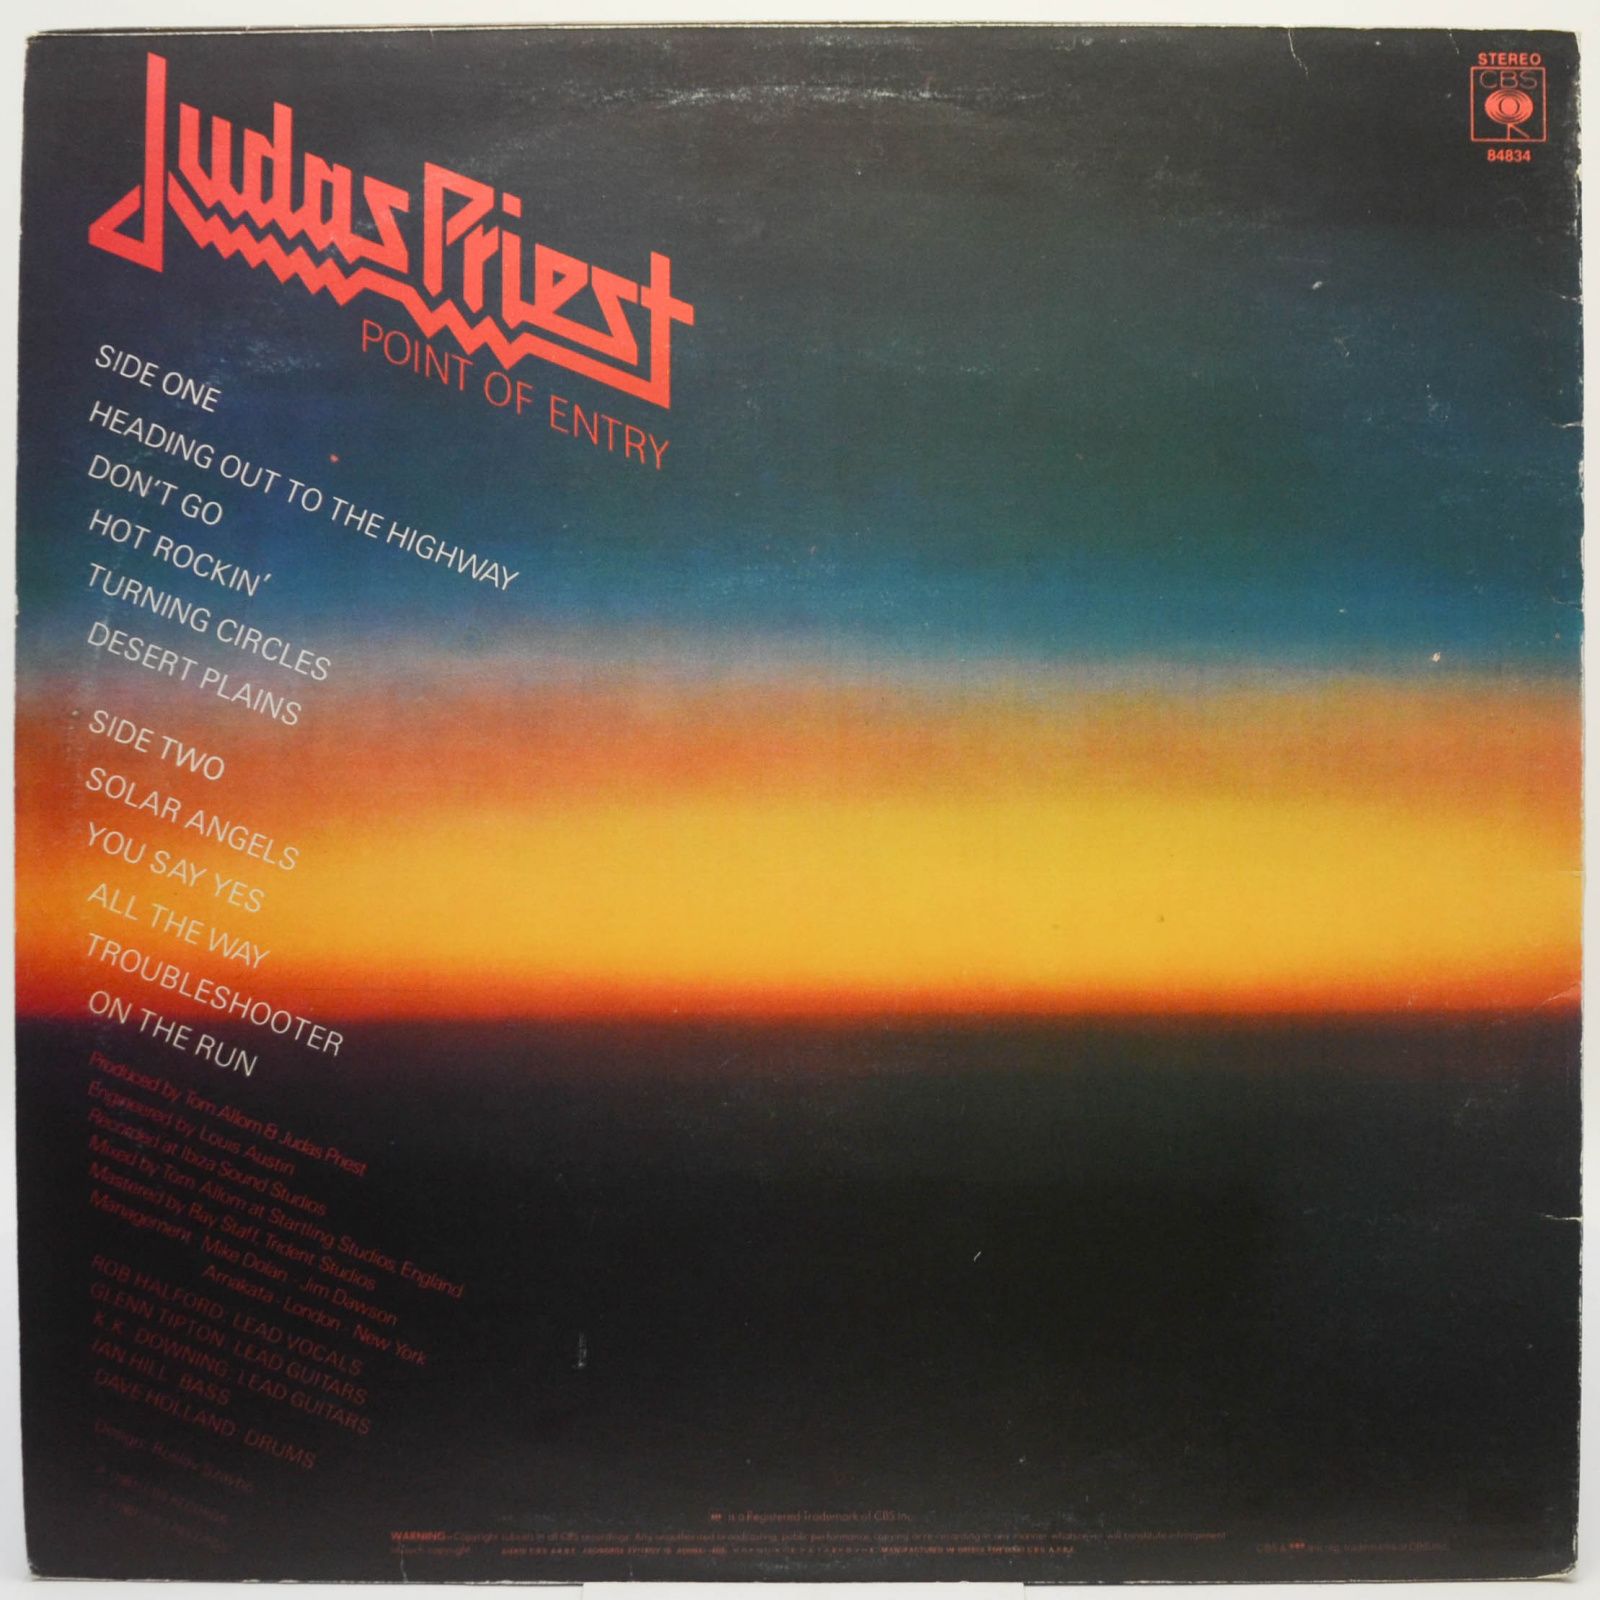 Judas Priest "point of entry". Judas Priest point of entry LP. Judas in Priest albums. Invincible shield judas priest альбомы